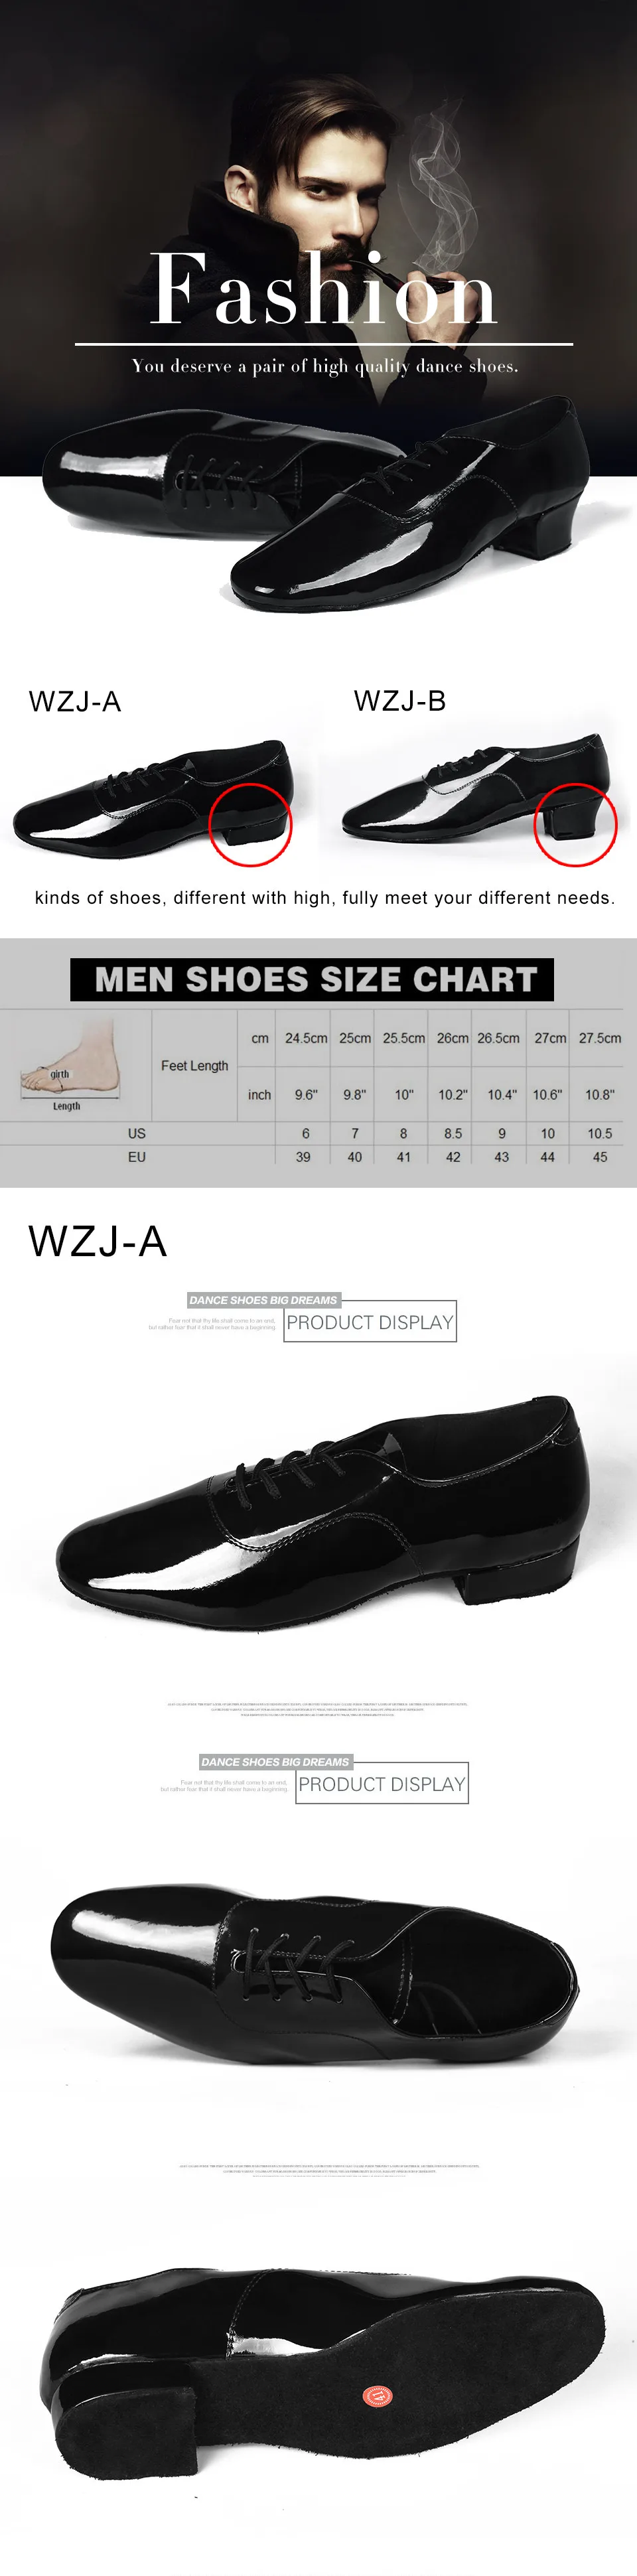 Новое поступление, размеры 39-45, профессиональная танцевальная обувь для латинских танцев для мужчин, детей и взрослых, танцевальная обувь для мужчин, WZJ, два вида каблуков